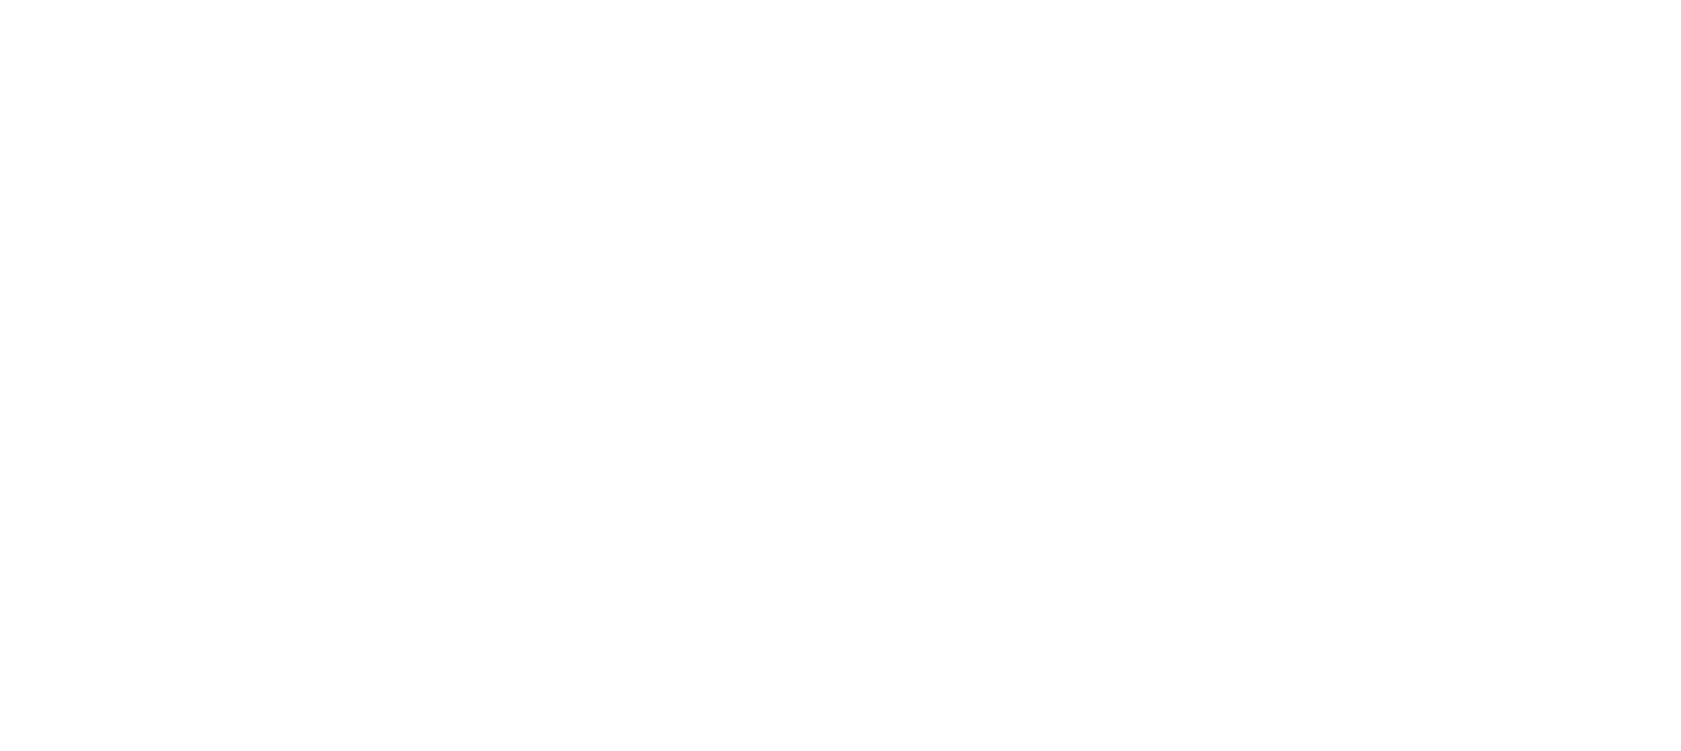 JPFashionStudio